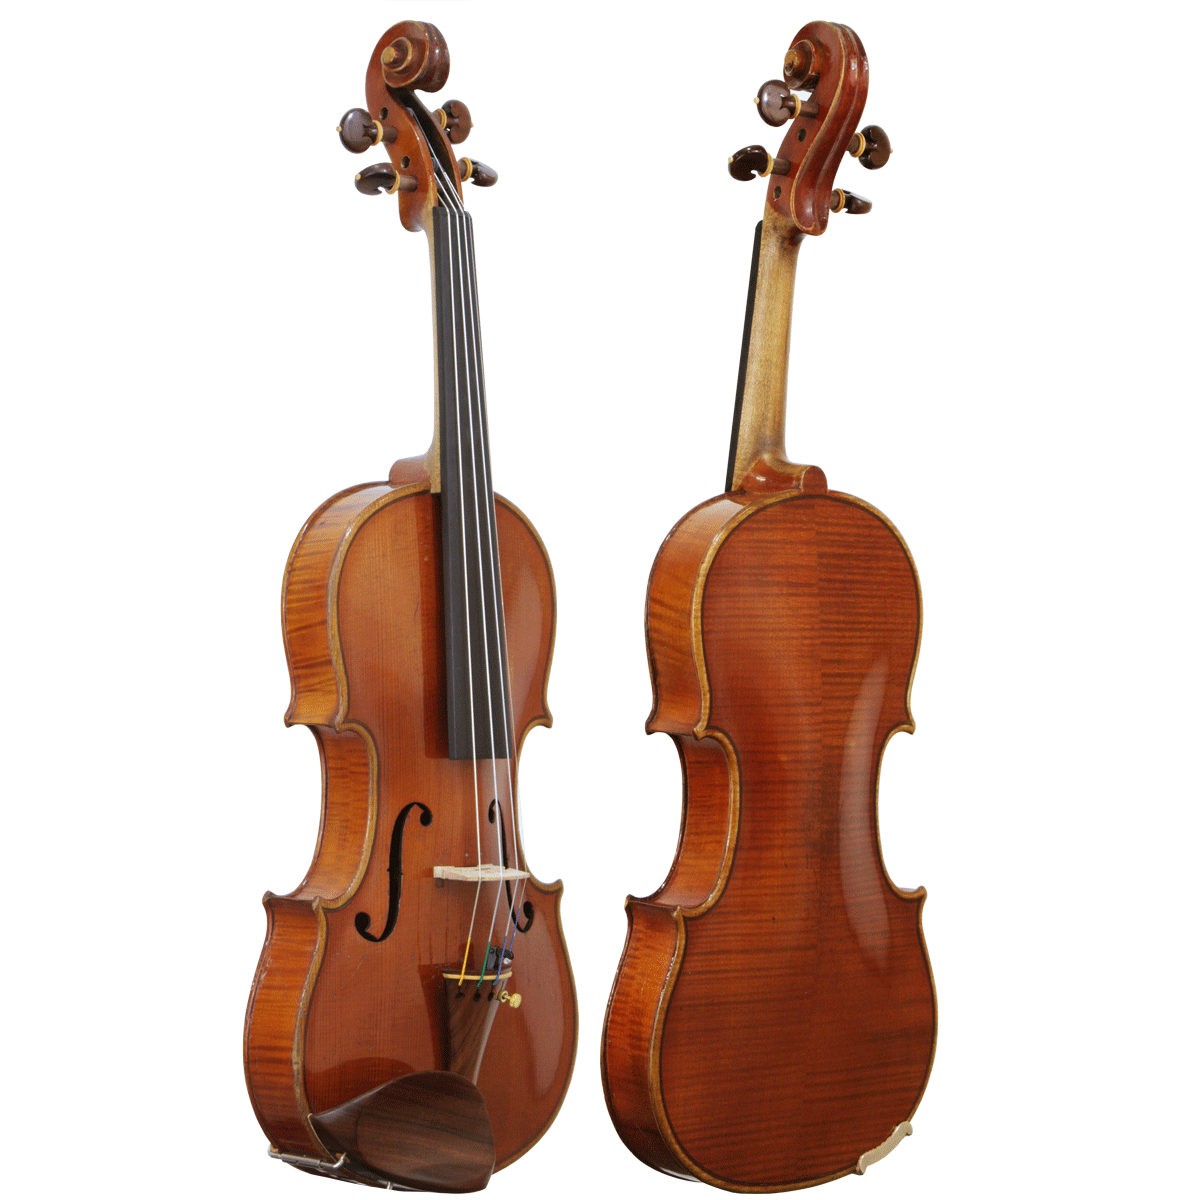 Violino Antigo de Oficina Alemã Modelo Strad 4/4 aprx 80